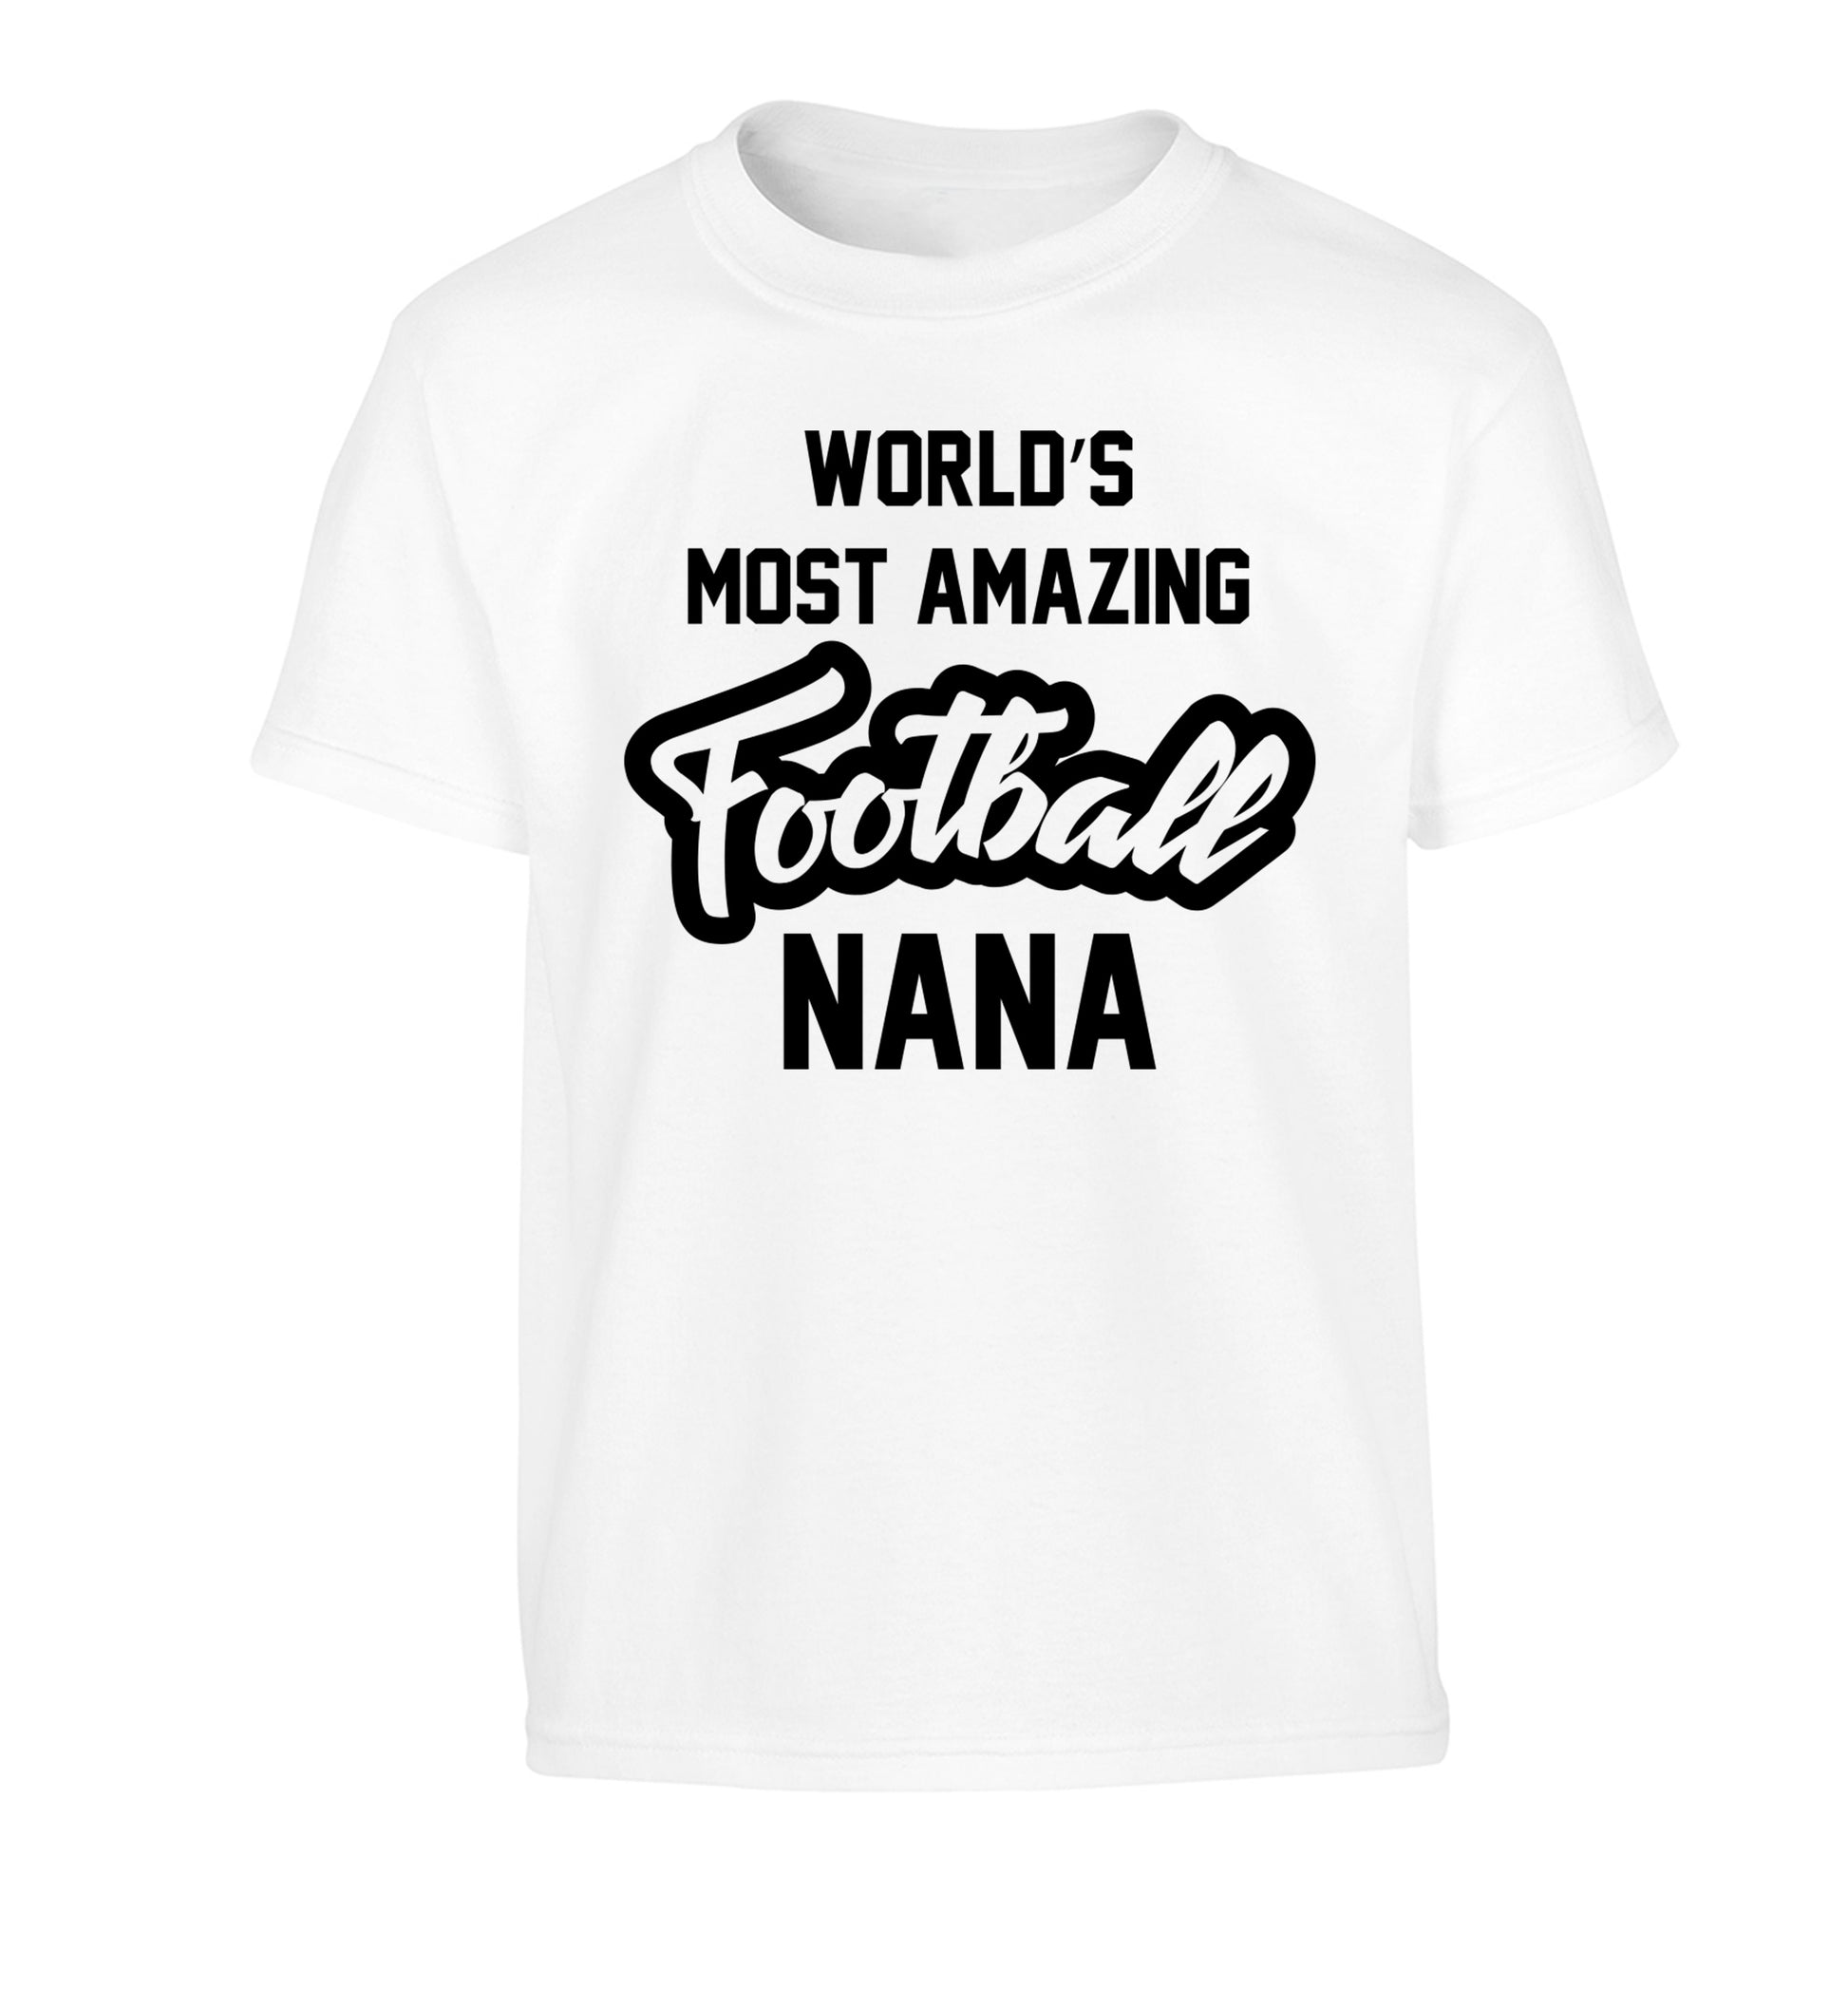 Worlds most amazing football nana Children's white Tshirt 12-14 Years